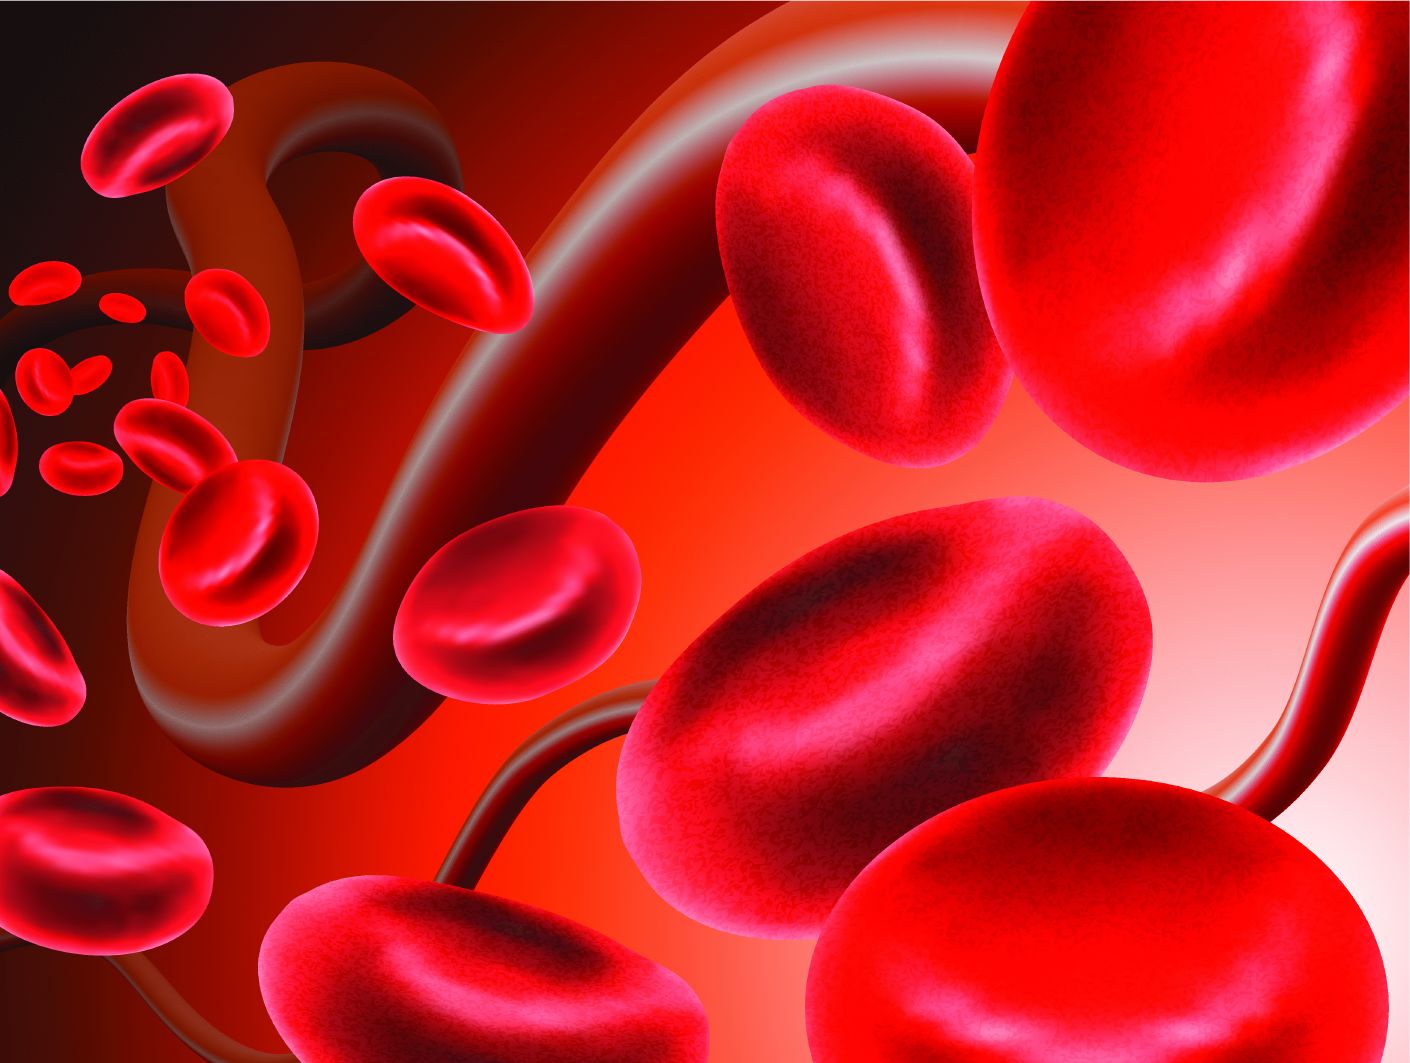 שומנים בדם - כדוריות דם אדומות